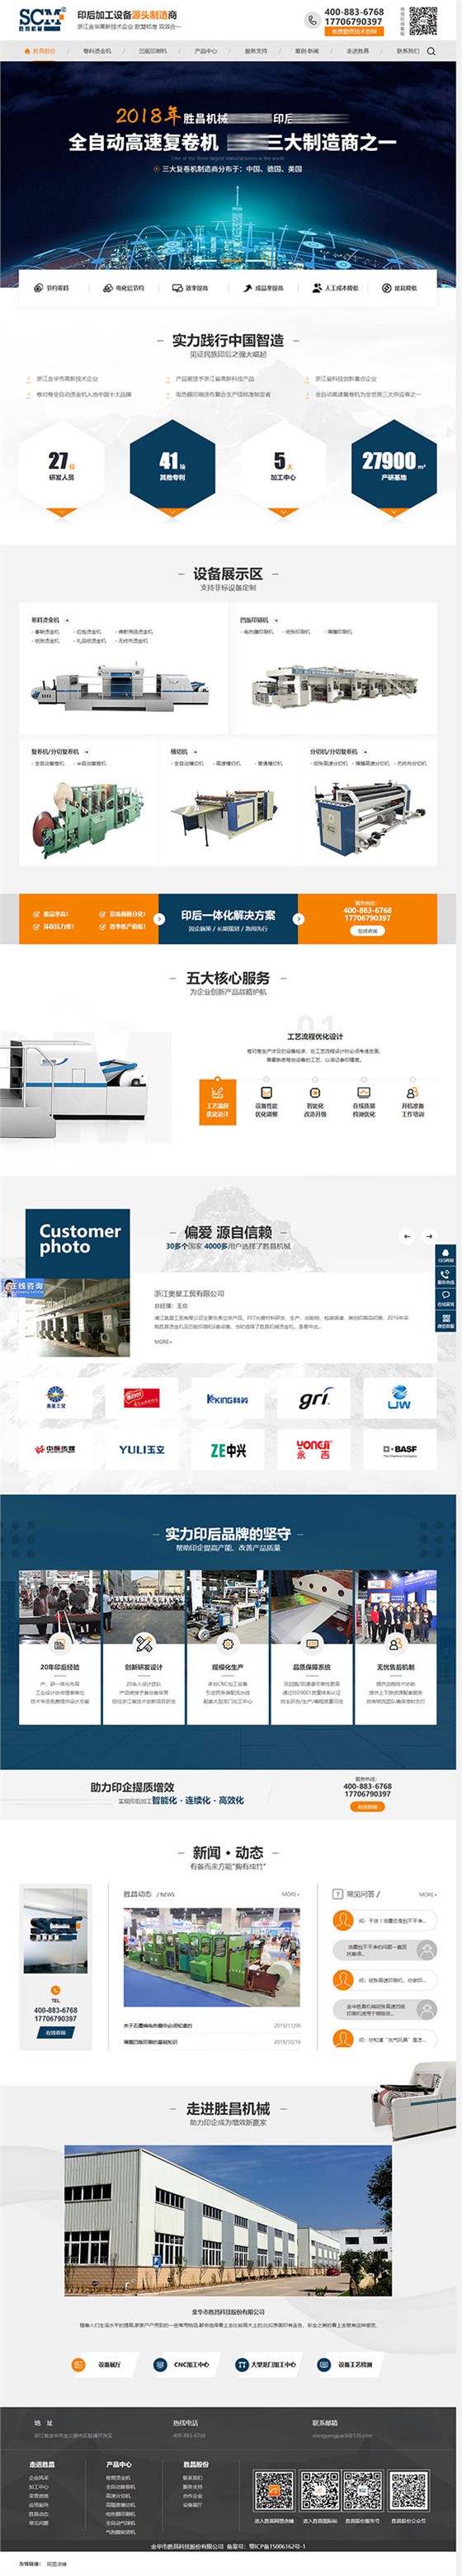 胜昌机械营销型网站建设案例